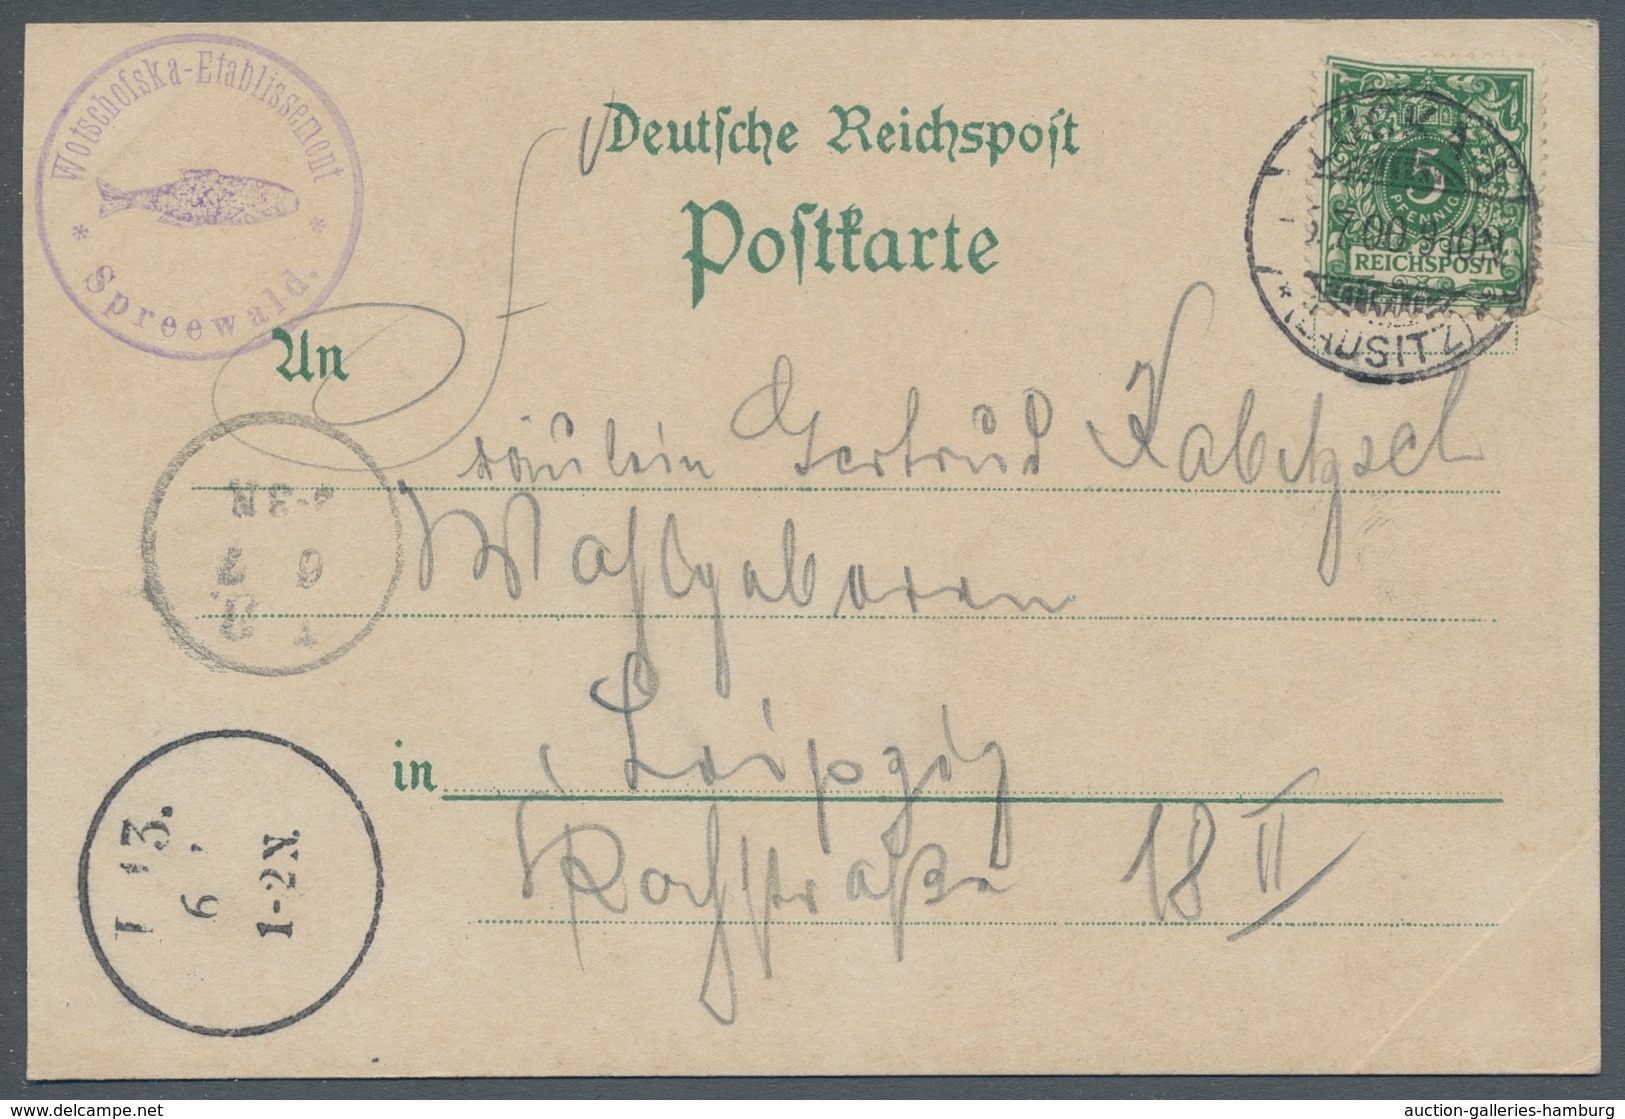 Ansichtskarten: Deutschland: 1890/1960 umfangreicher Posten von einigen tausend meist s/w AK's, der